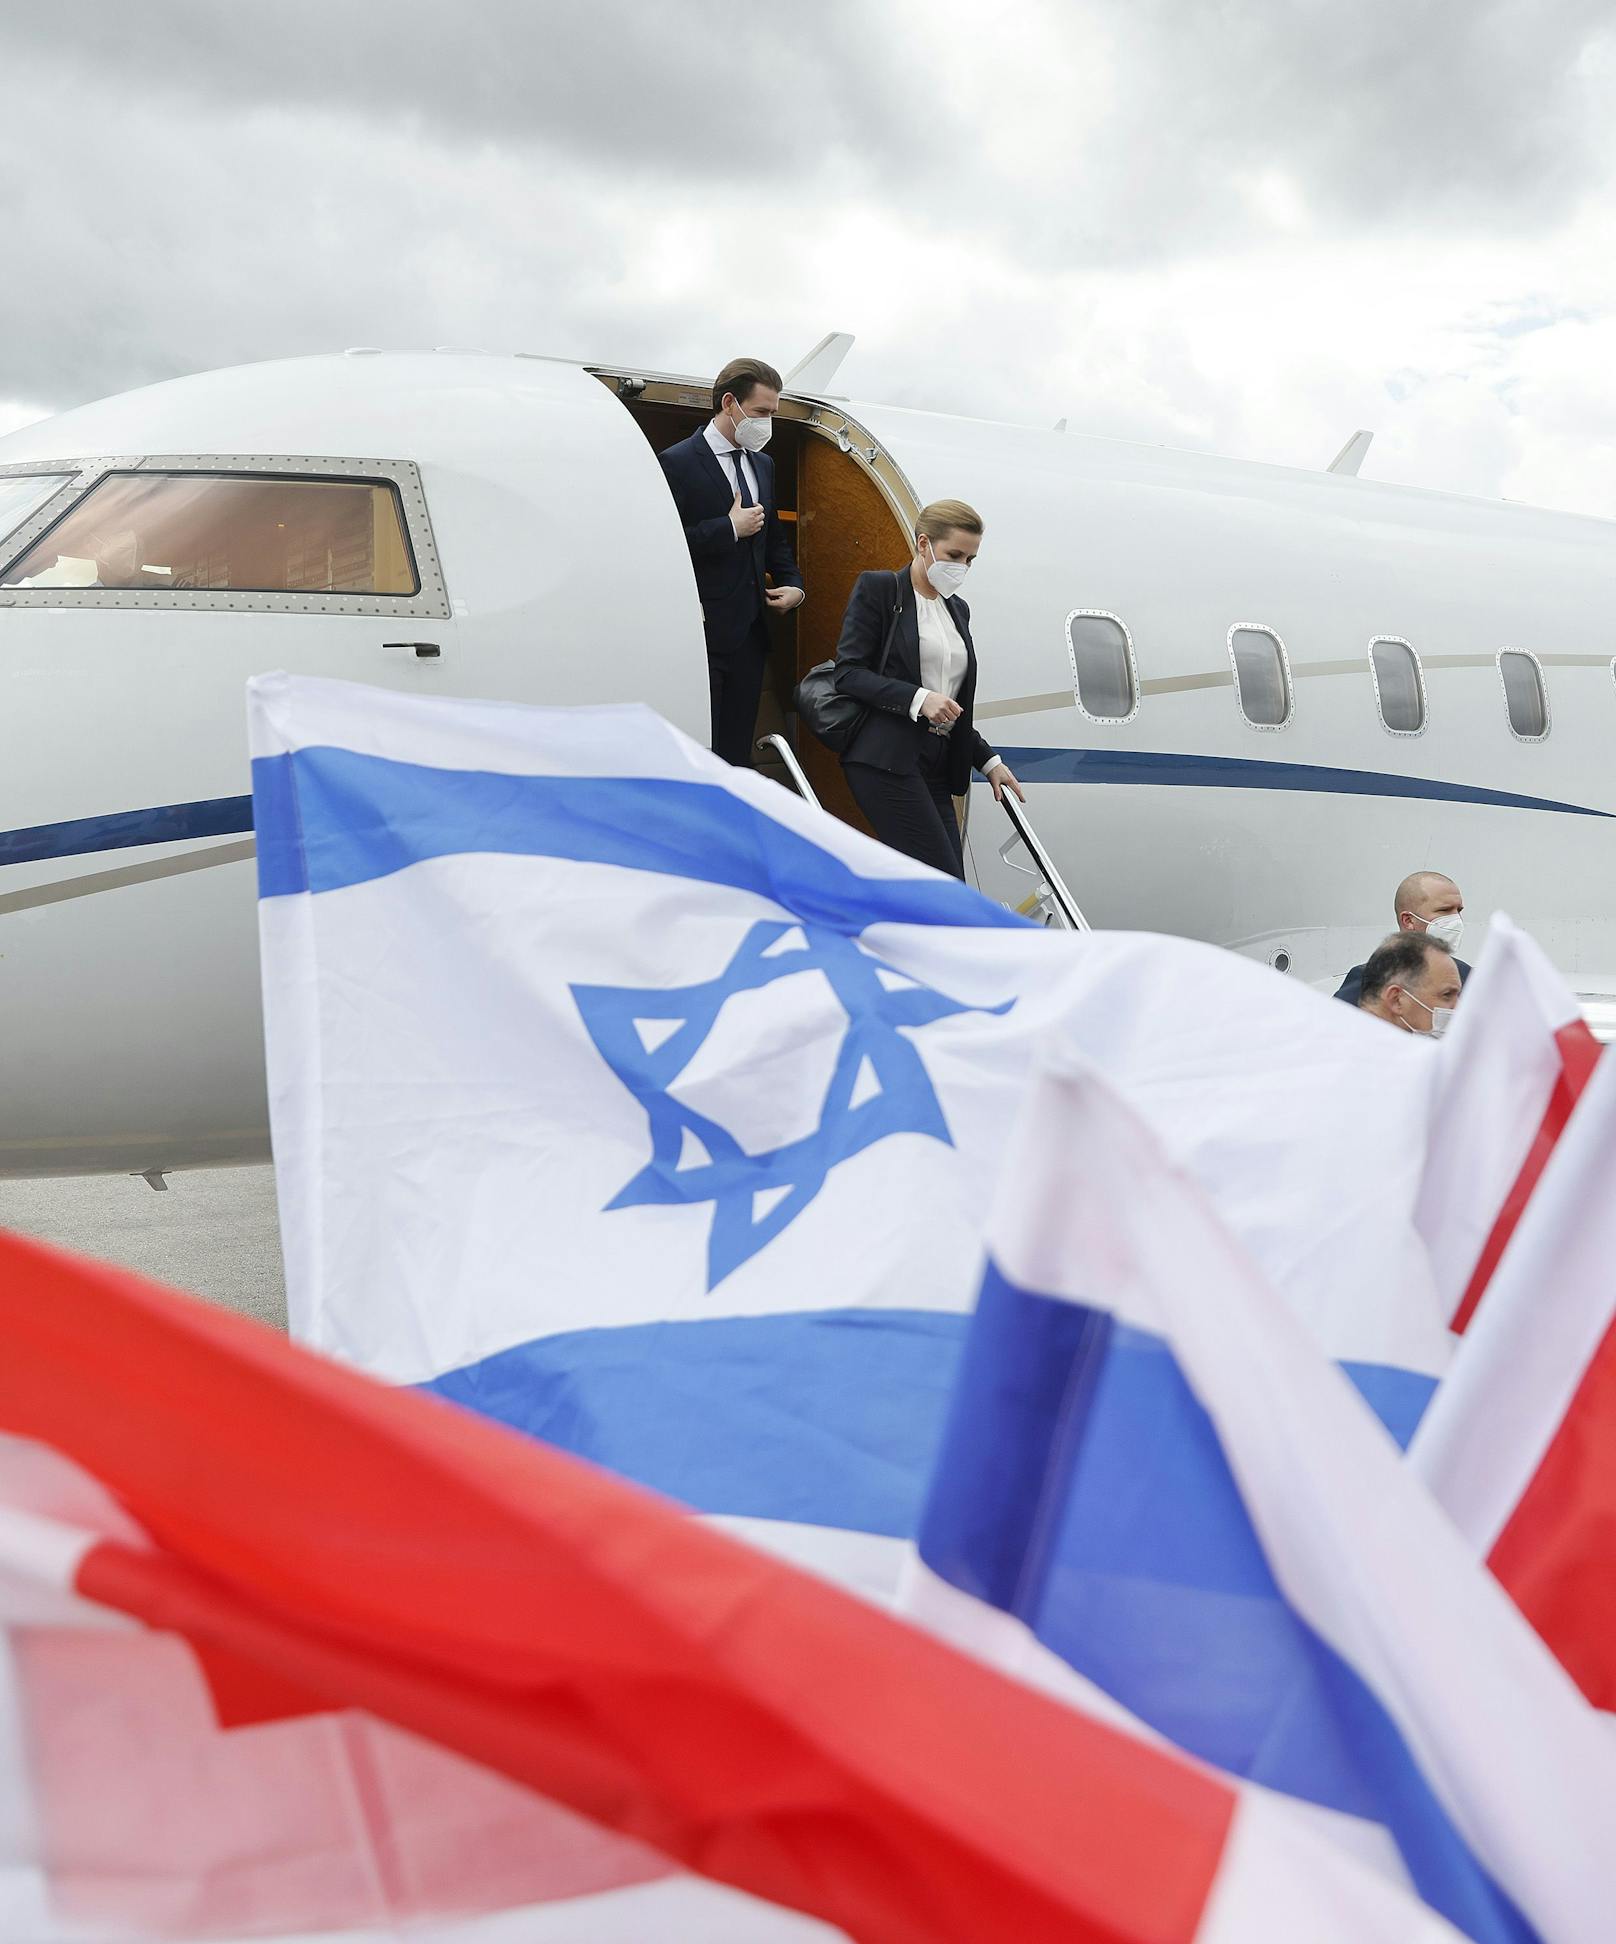 Bundeskanzler <strong>Sebastian Kurz</strong> (ÖVP) und seine dänische Amtskollegin <strong>Mette Frederiksen</strong> bei ihrer Ankunft am 4. März 2021 in Jerusalem im Rahmen einer eintägigen Visite mit Premier <strong>Benjamin Netanjahu</strong>.